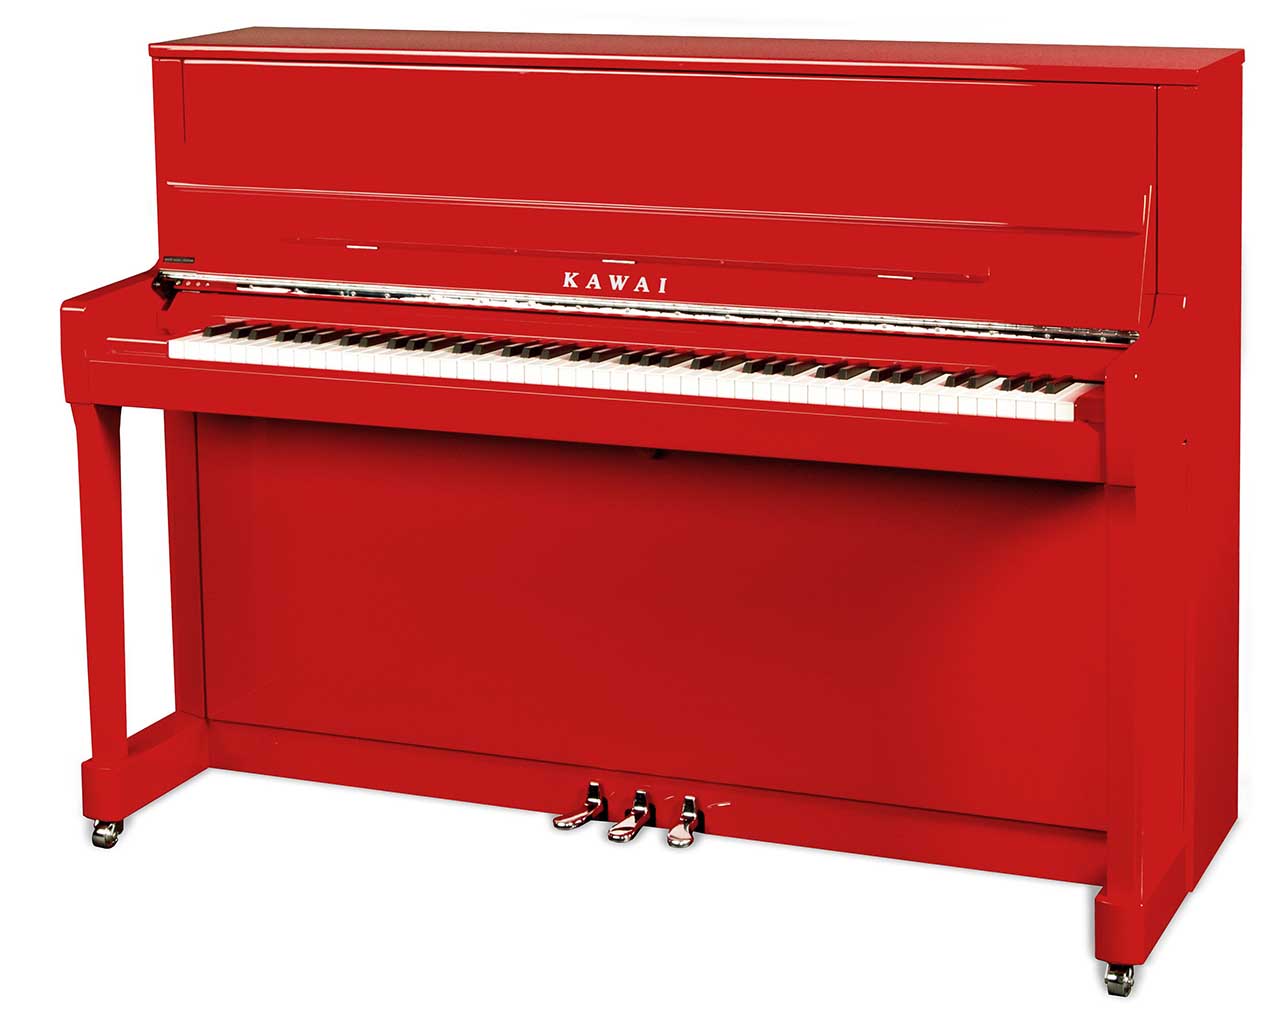 Kawai K 200 Red Klavier rot